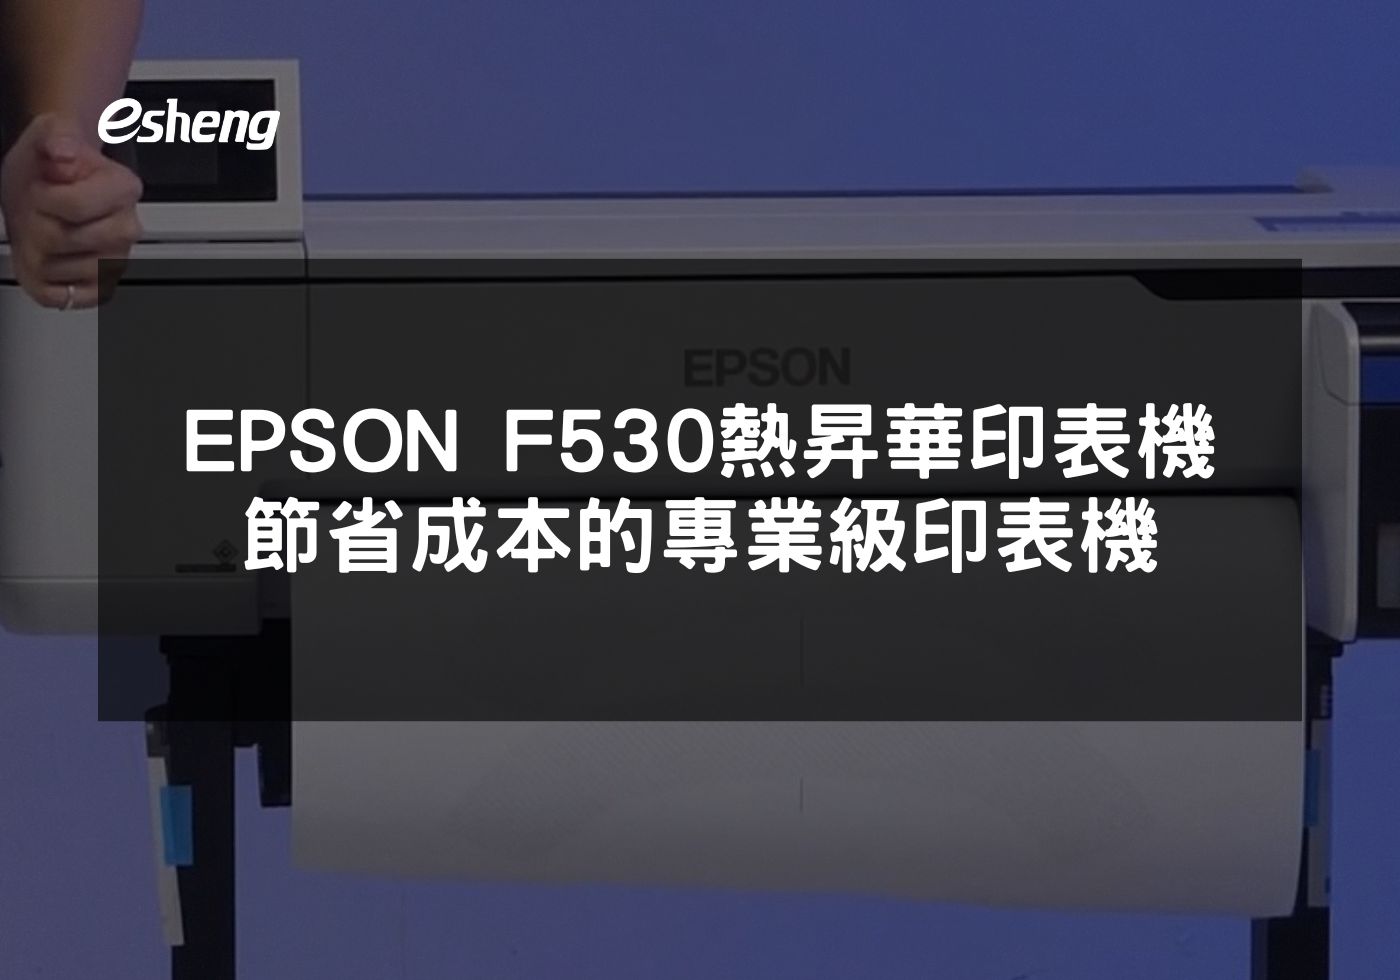 EPSON F530熱昇華印表機 節省成本的專業級印表機